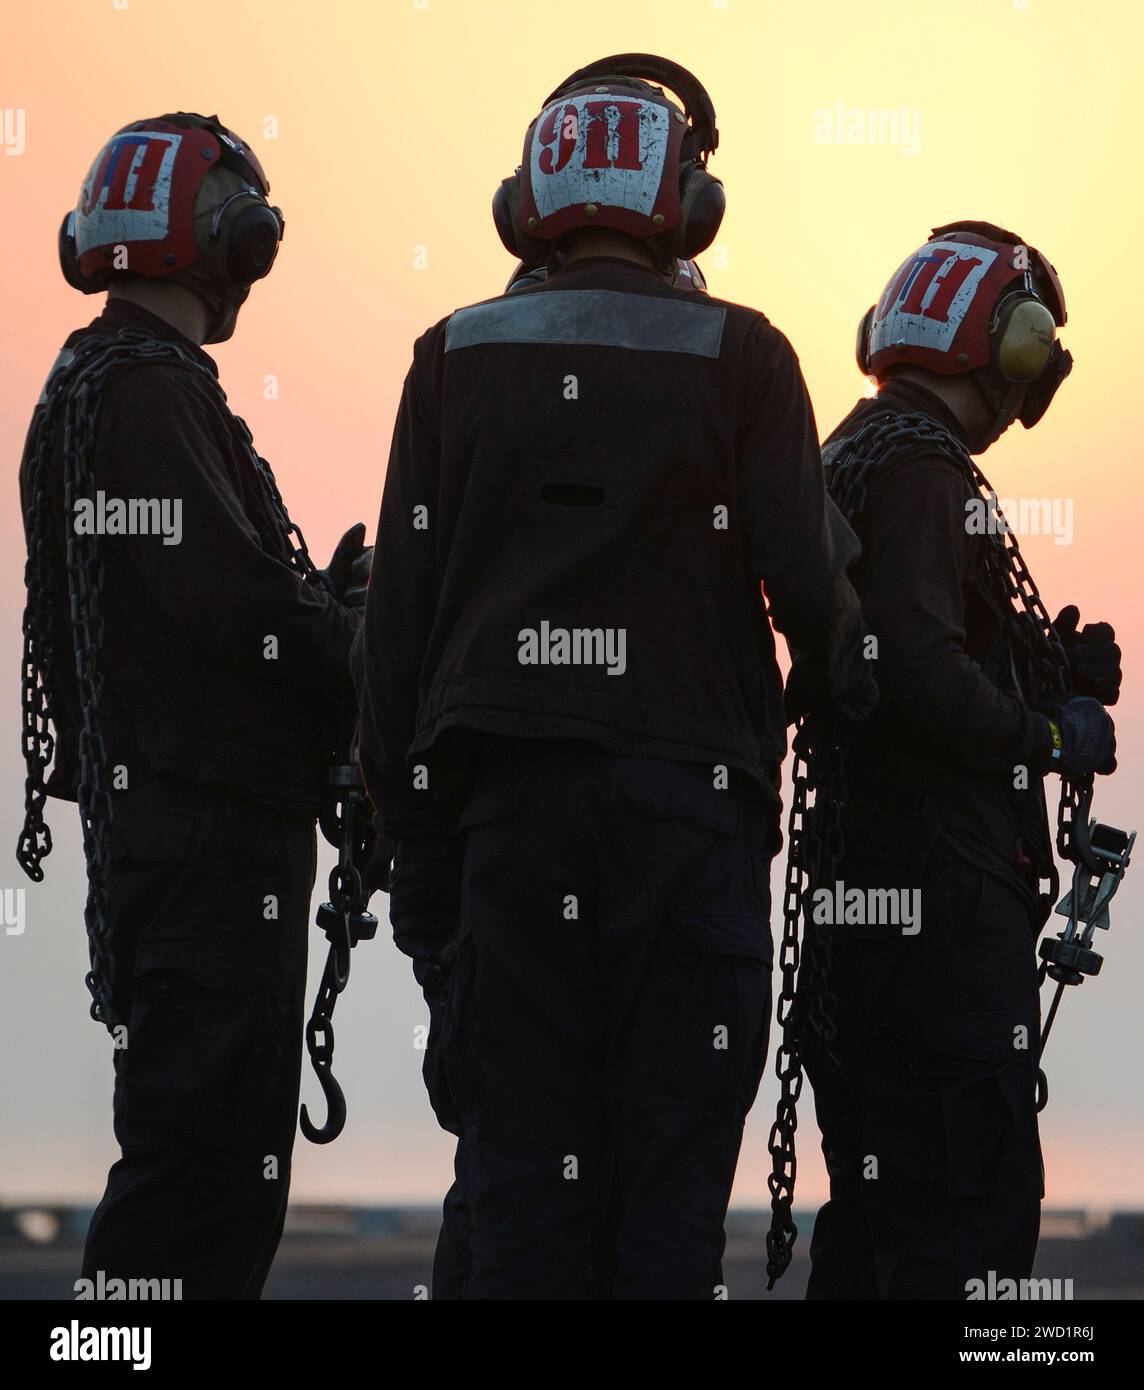 Seeleute nehmen an Bord der USS Nimitz Teil. Stockfoto